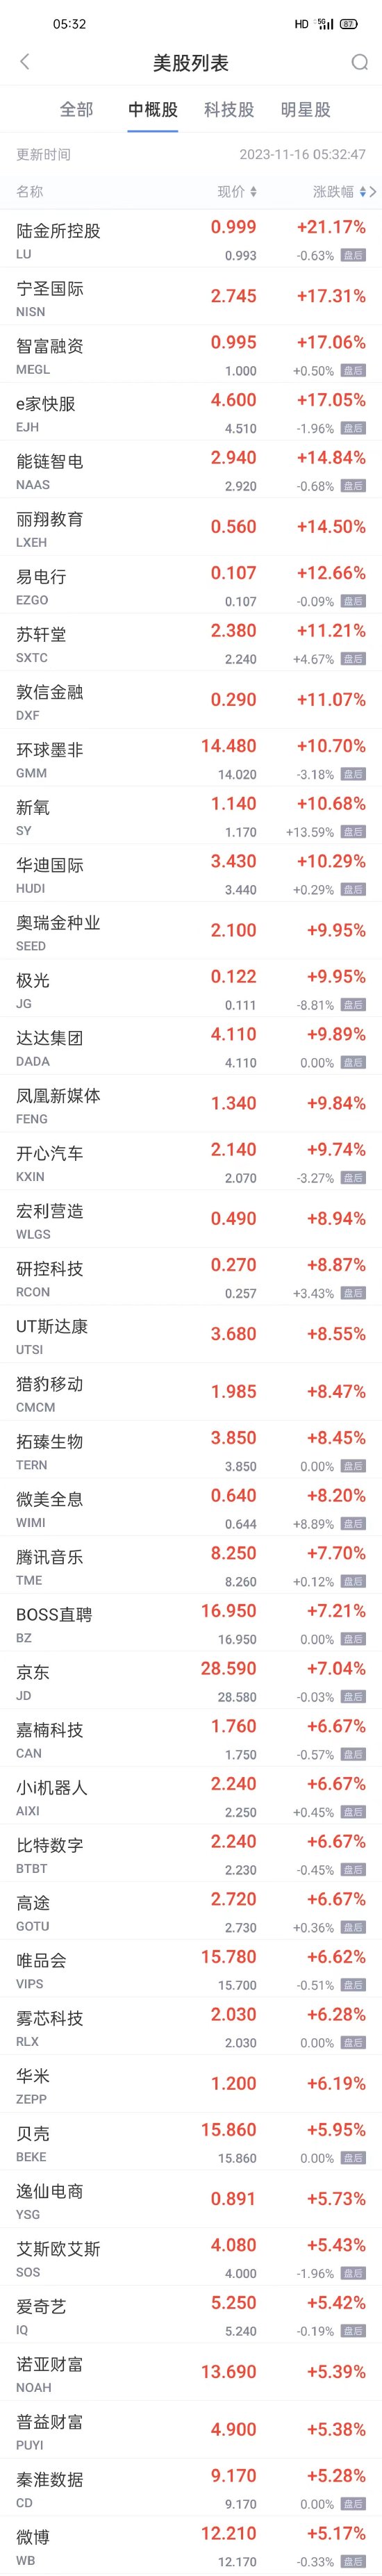 热门中概股周三普涨 京东涨超7% 微博爱奇艺涨超5% 阿里百度拼多多涨超3%